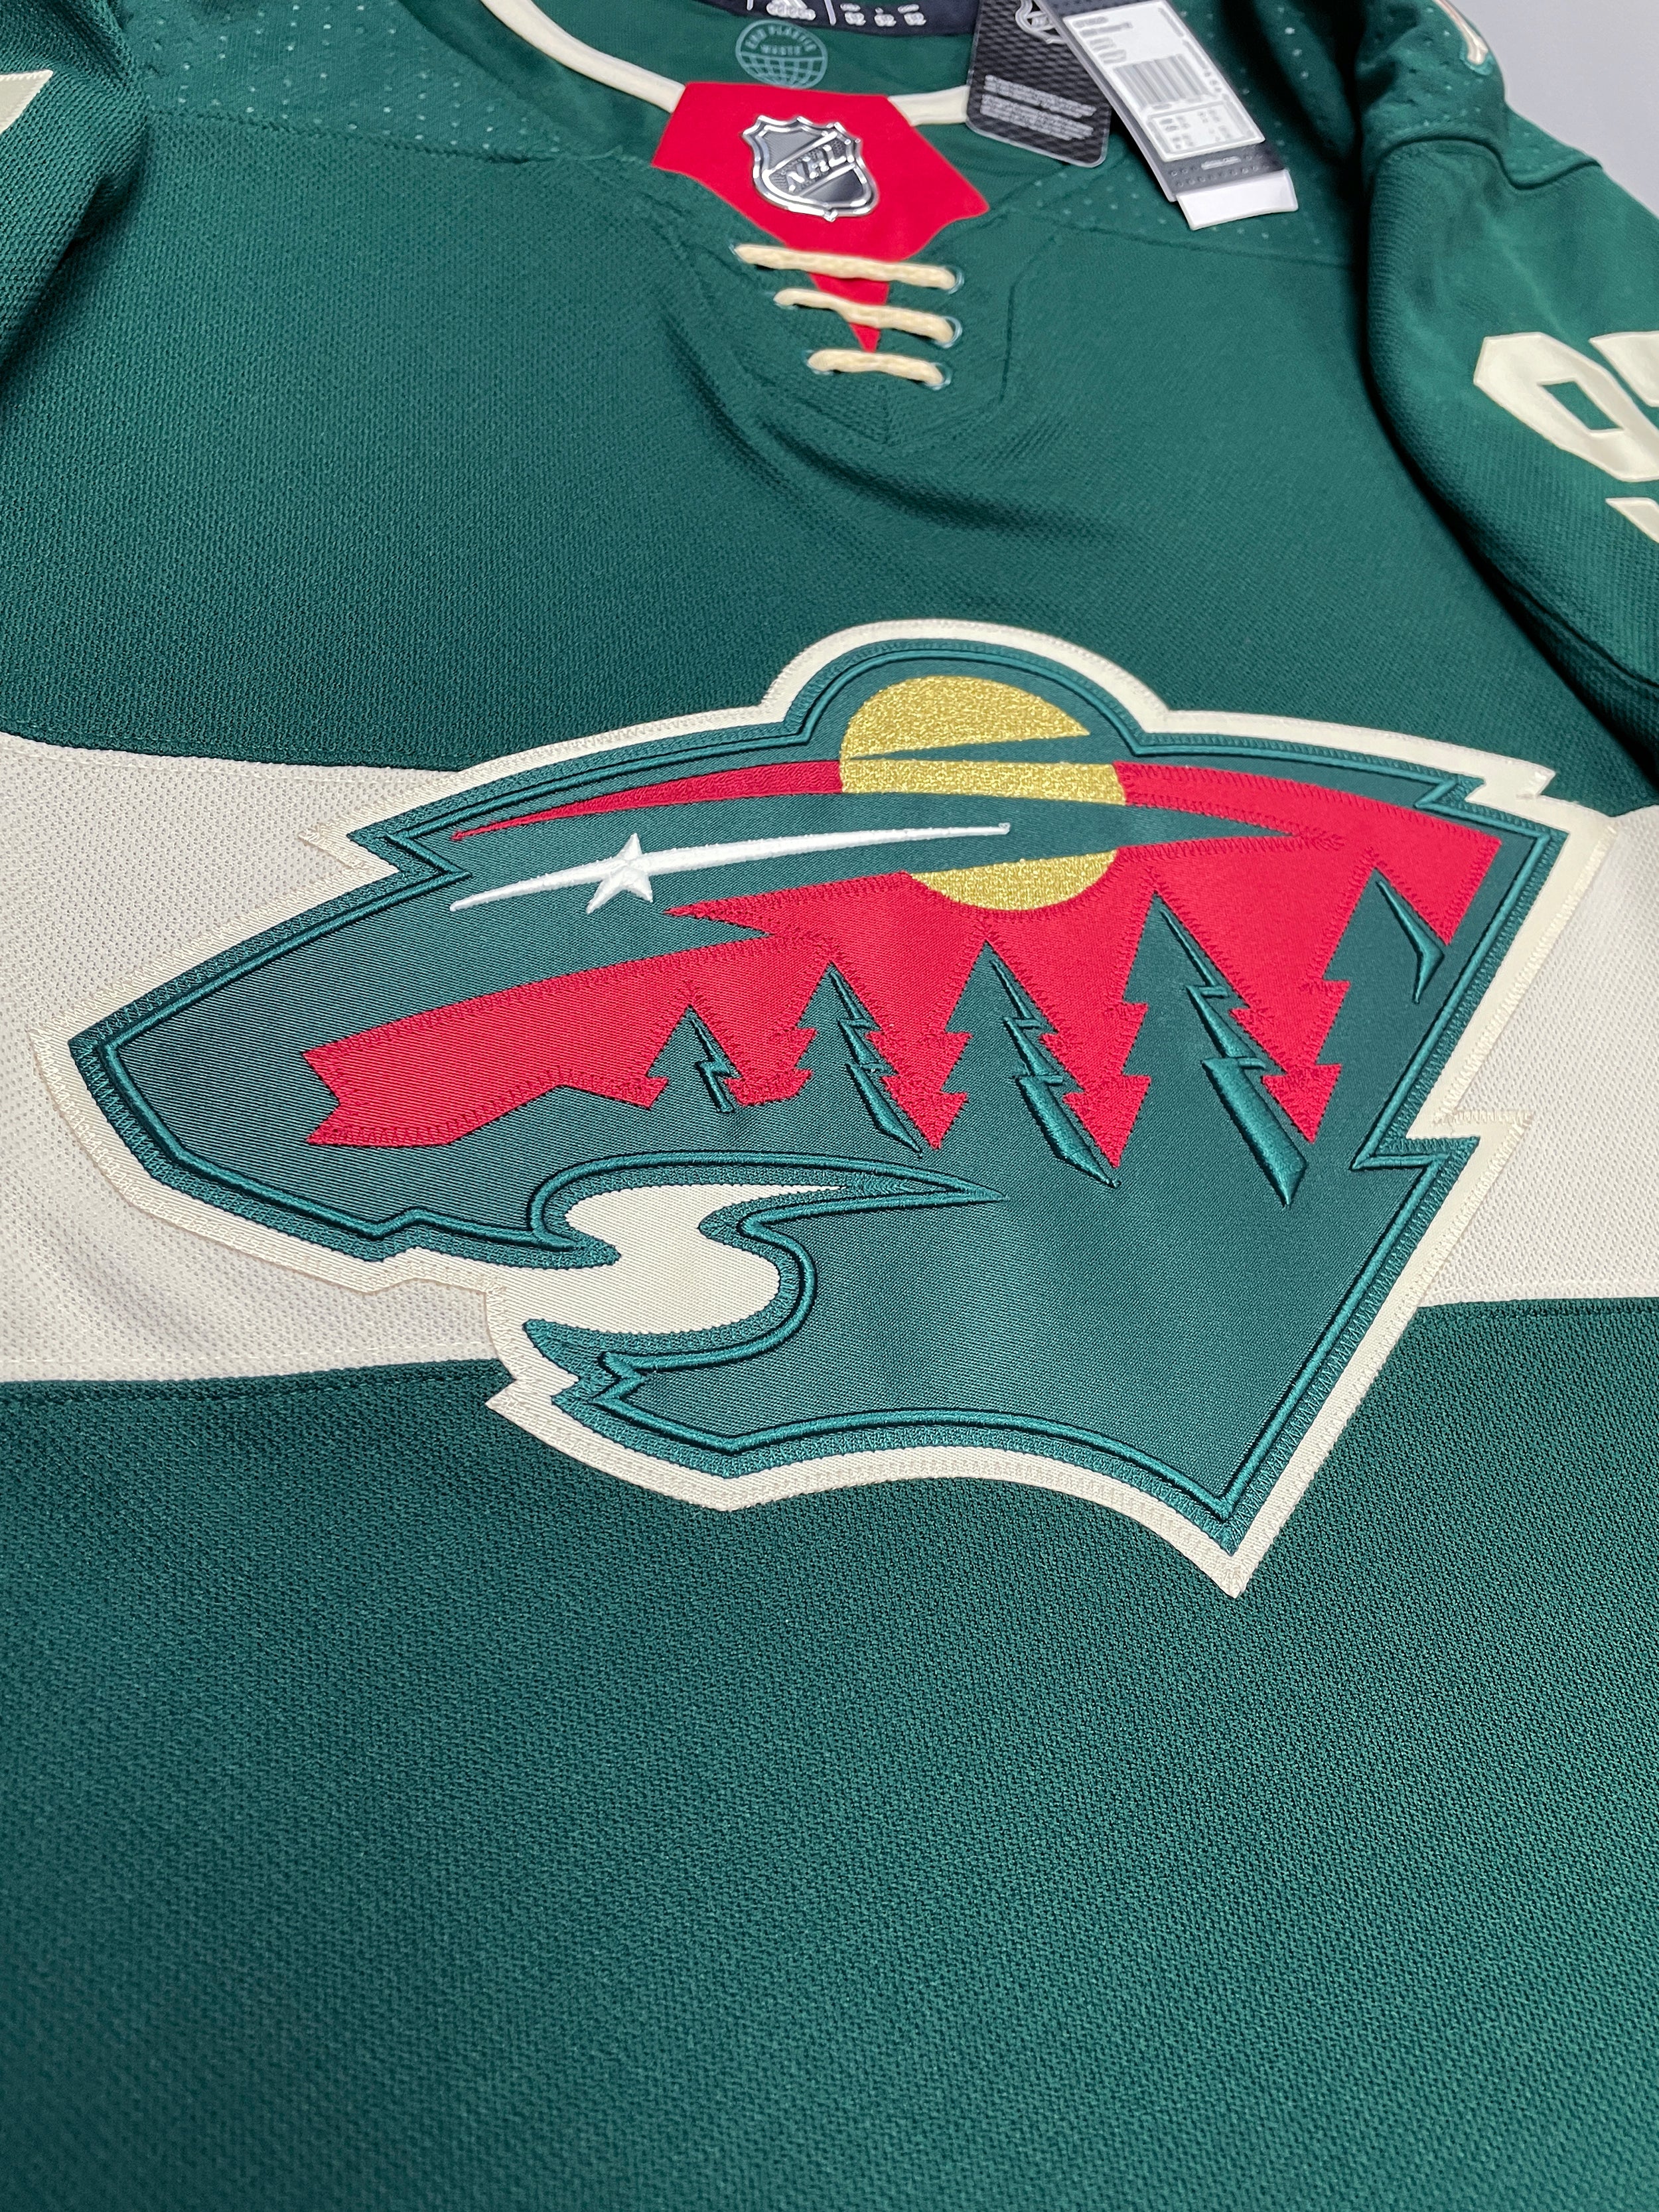 Kirill Kaprizov Minnesota Wild Fanatics Branded 2022 Winter Classic Name &  Number T-Shirt - Green